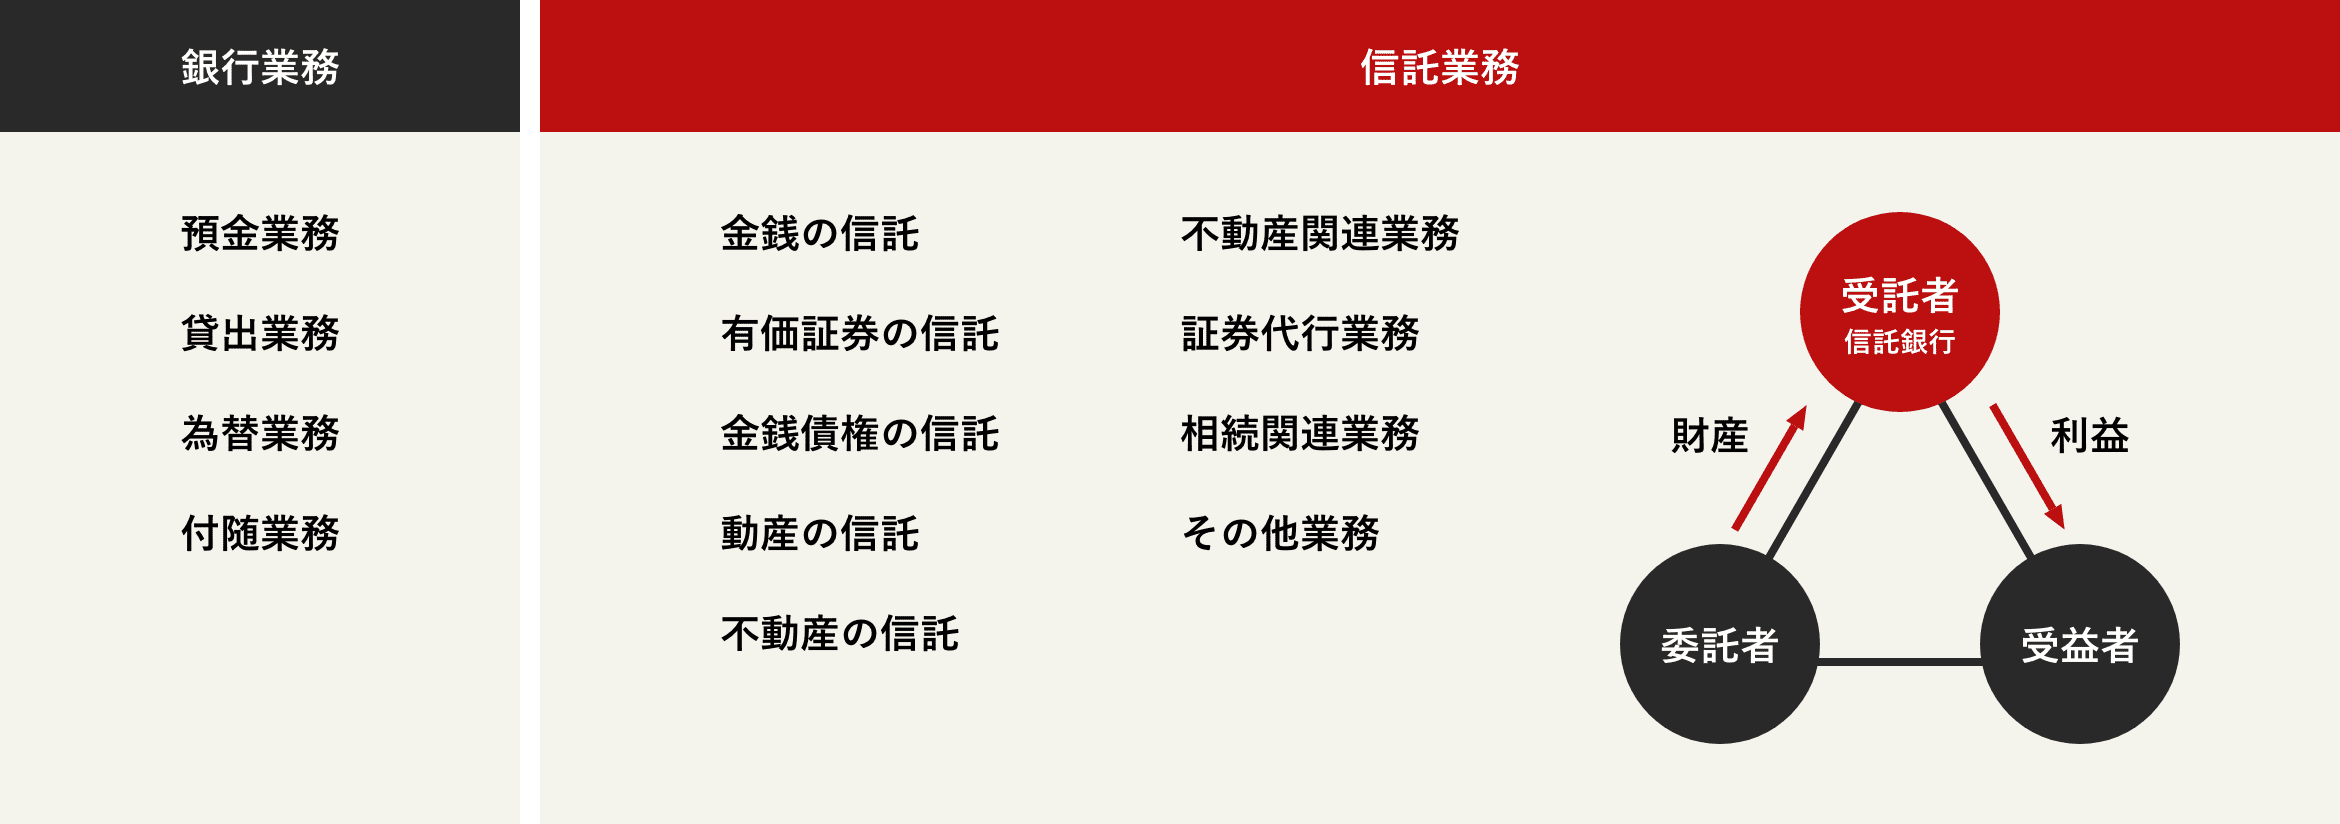 三菱ＵＦＪ信託銀行・日本マスタートラスト信託銀行の業務 図